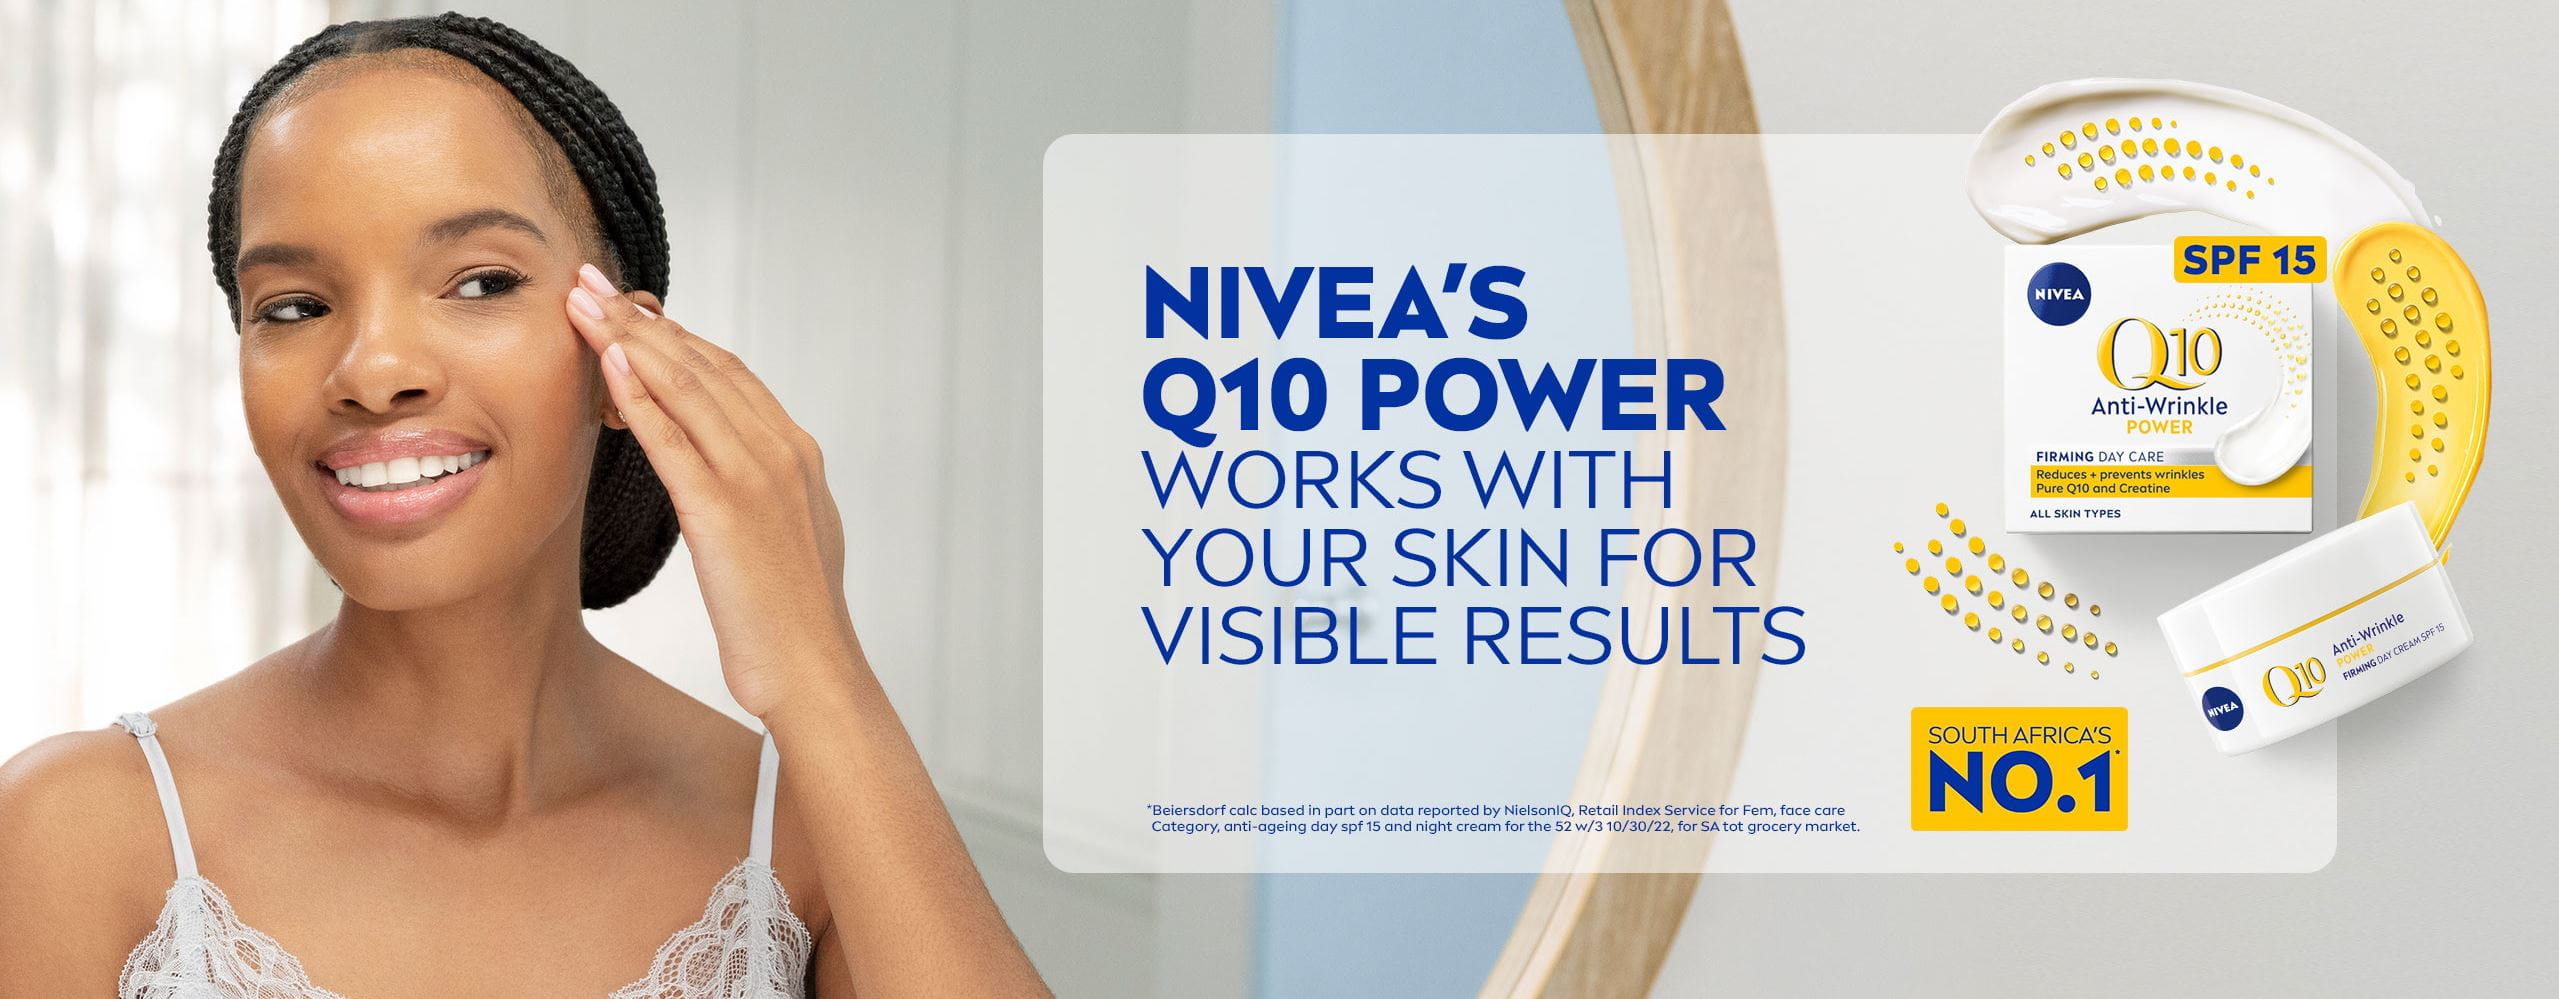 niveas q10 power works